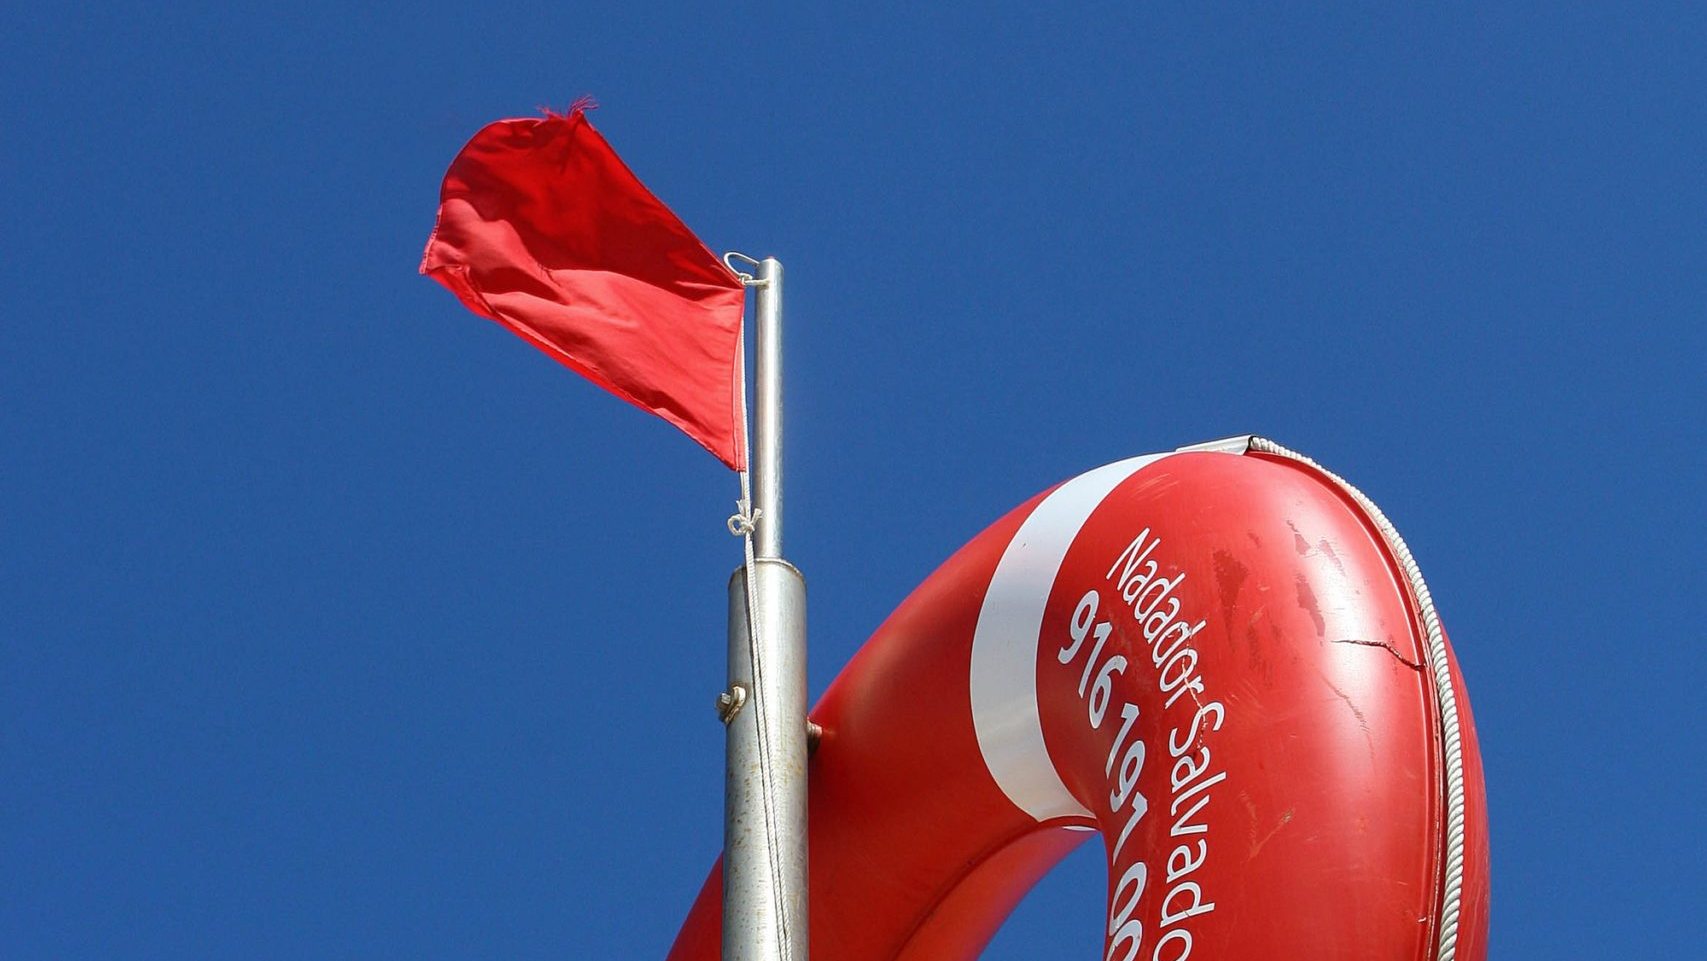 Bandeira vermelha içada na praia que esteve fechada a banhos devido às Caravelas que invadiram a praia da Foz do Arelho, tornado-a interdita a banhos, a 30 de Julho de 2009.    MARIO CALDEIRA / LUSA